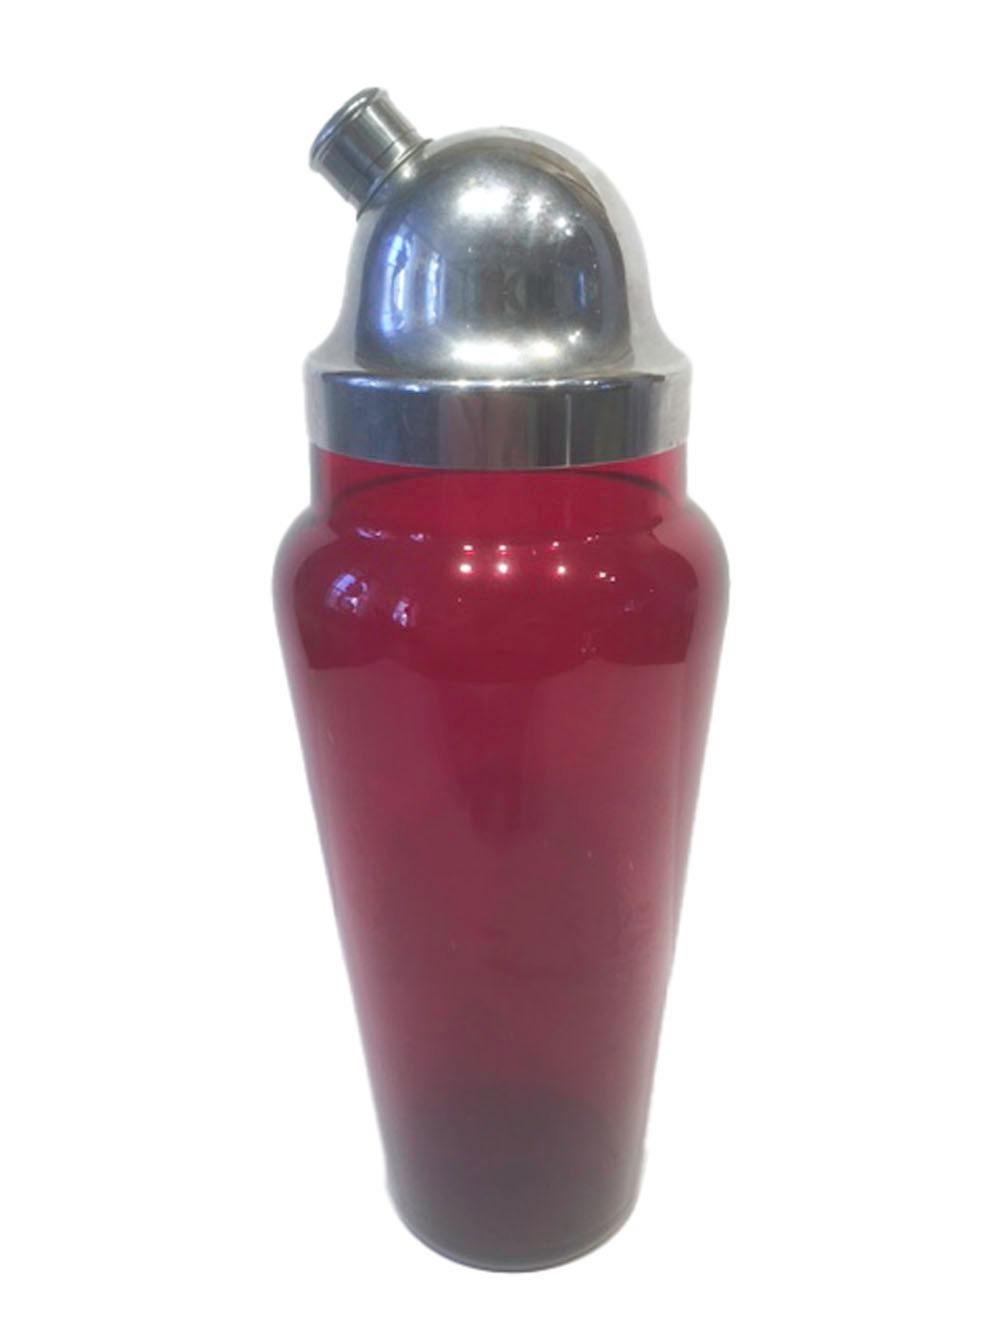 Shaker Art Déco en verre rouge rubis avec un couvercle chromé bombé ayant un bec verseur avec une passoire intégrée. Le corps du shaker s'amincit à partir de l'épaule arrondie. Le couvercle chromé s'adapte parfaitement au col du shaker.